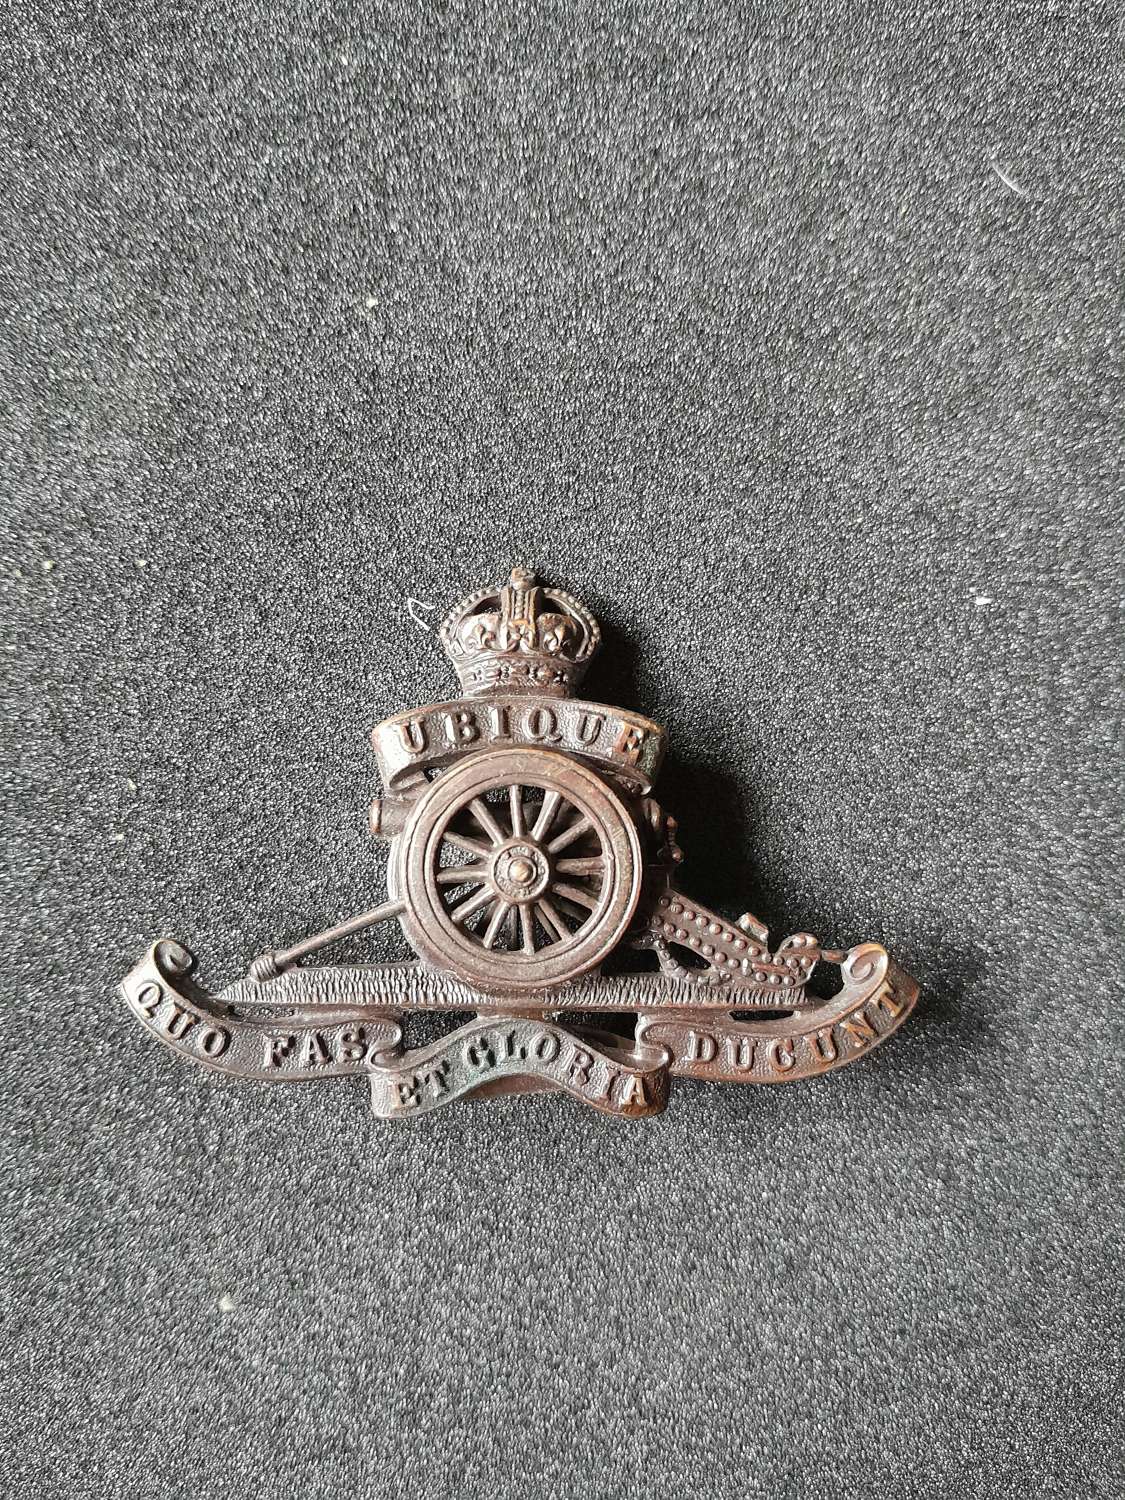 Royal Field Artillery cap badge